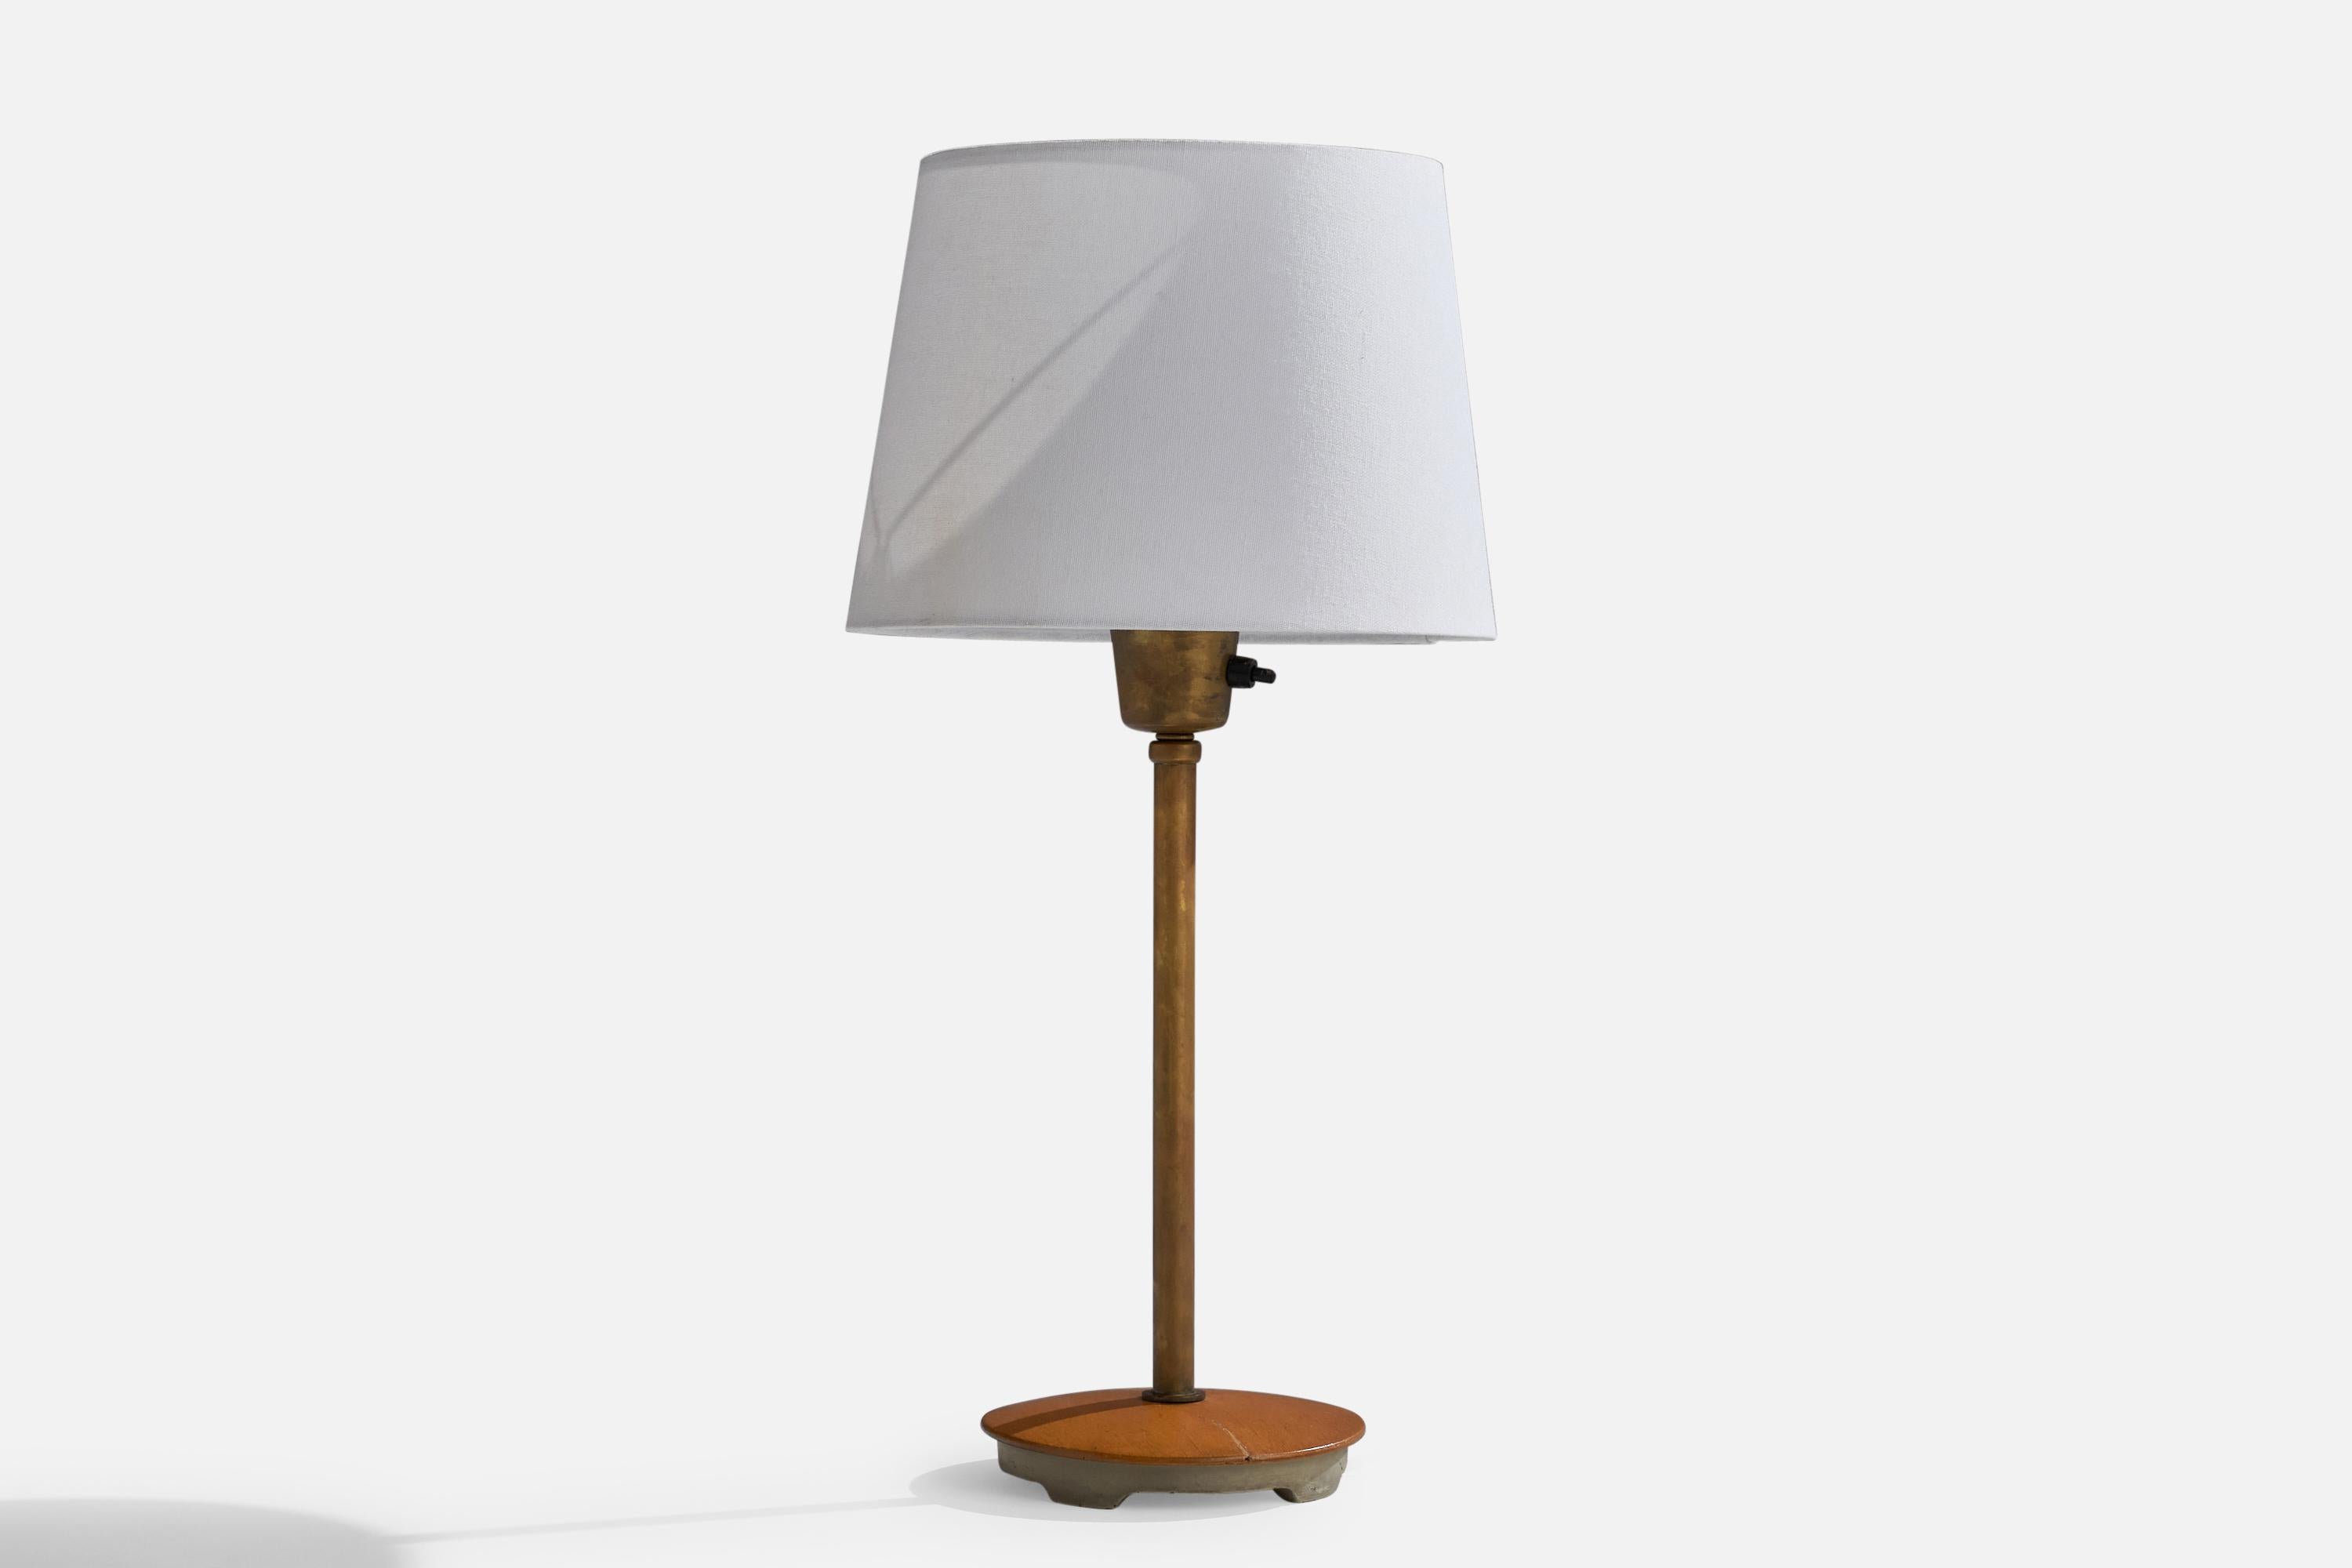 Lampe de table réglable en laiton, chêne et fer, conçue par Bertil Brisborg et produite par Nordiska Kompaniet, Suède, années 1940.

Dimensions de la lampe (pouces) : 15.25